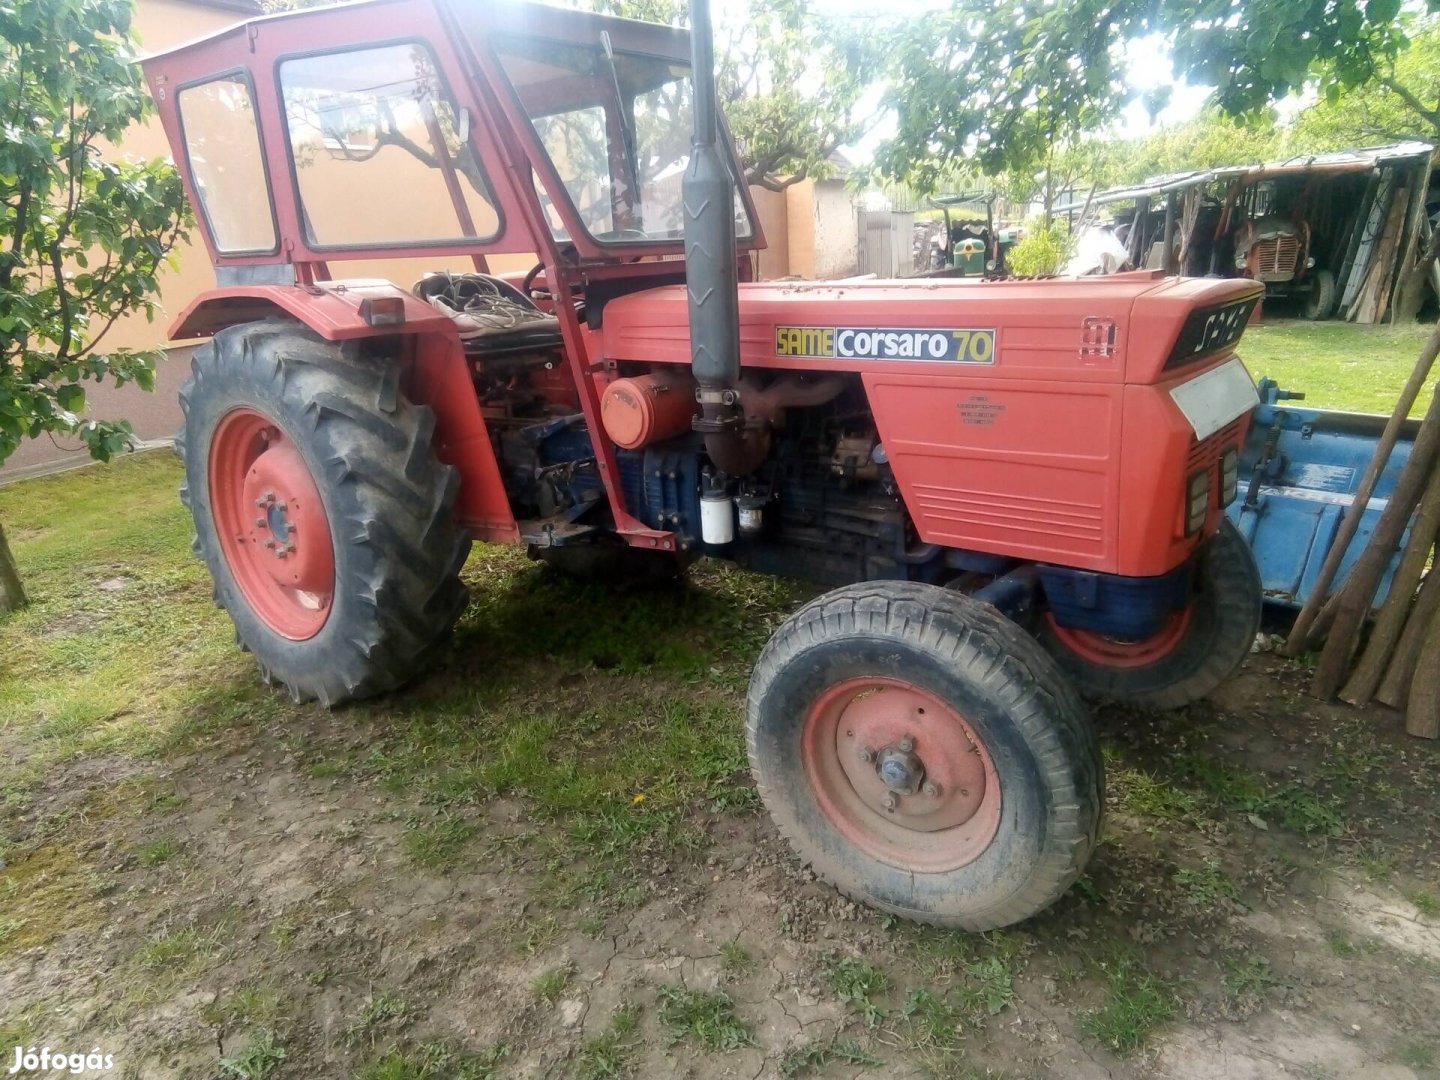 Same traktor 